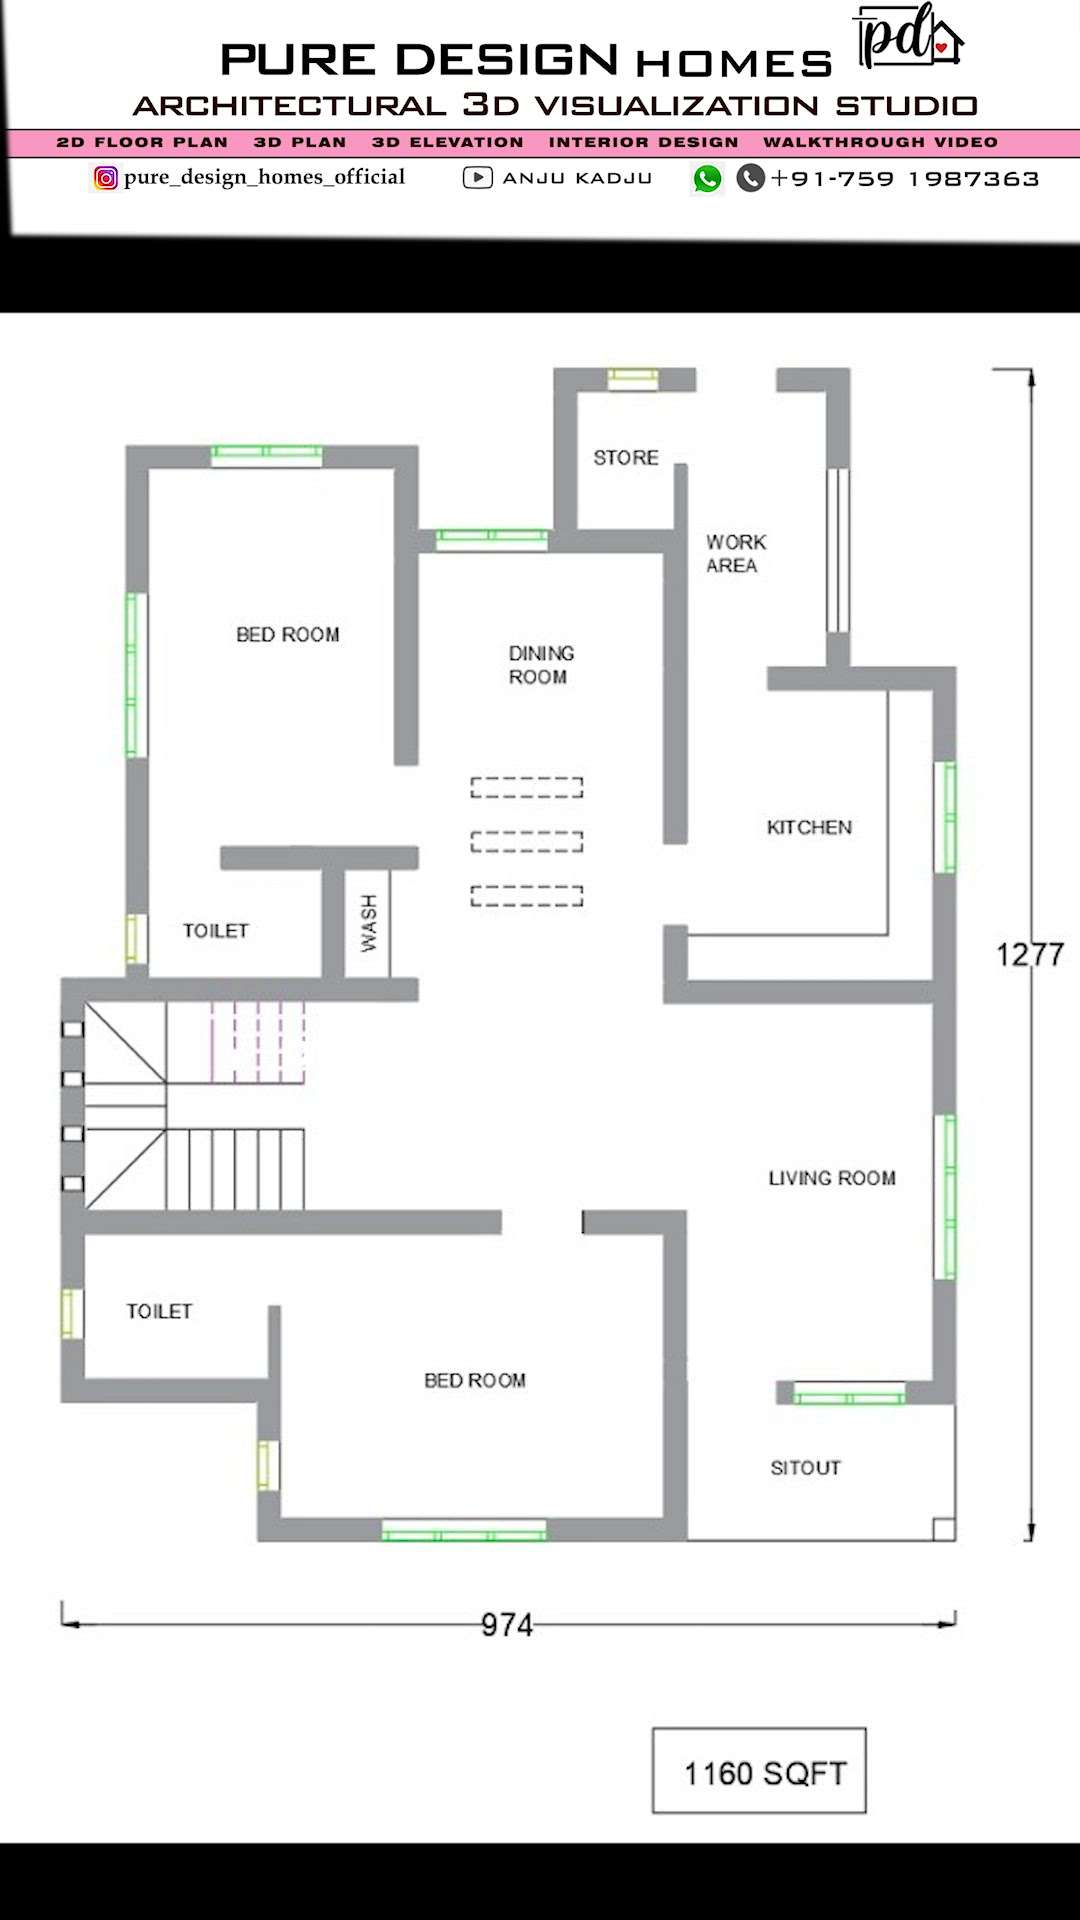 introducing premium quality 3d floor plan / interior design concept
 #3DPlans #3Dfloorplans #InteriorDesigner #Architectural&Interior #interiordesign